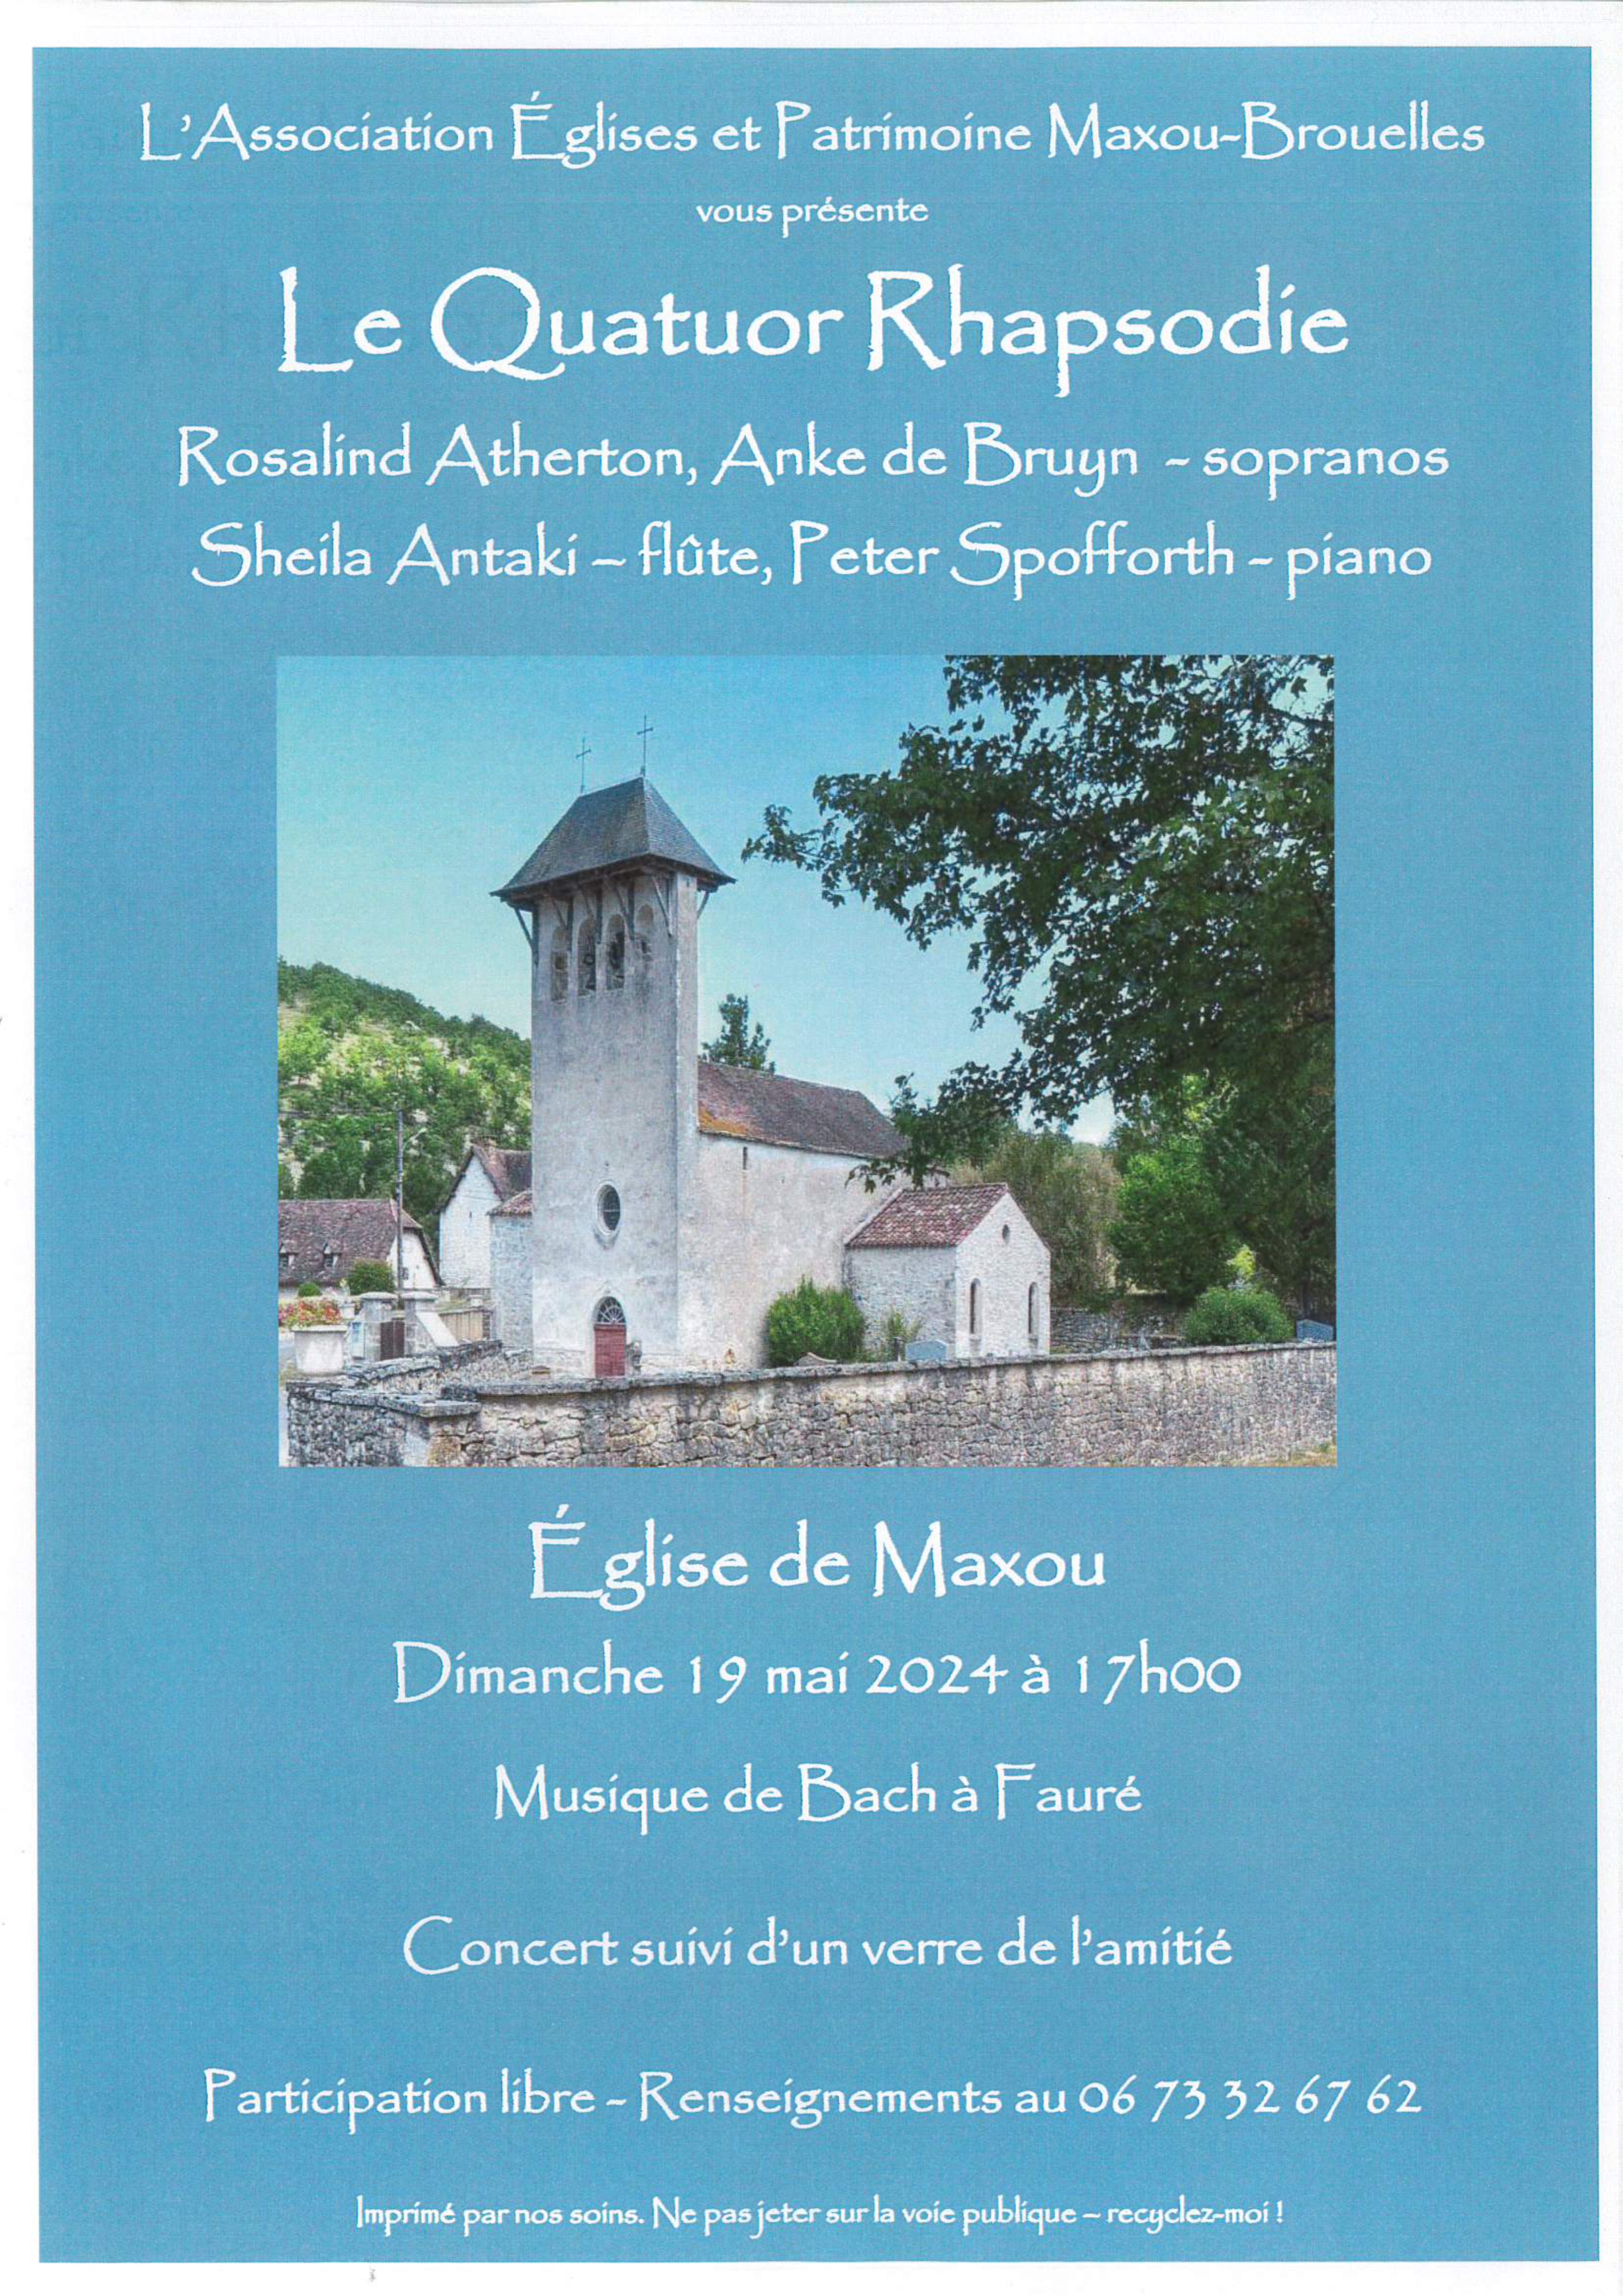 Figeac : Concert dans l’église de Maxou